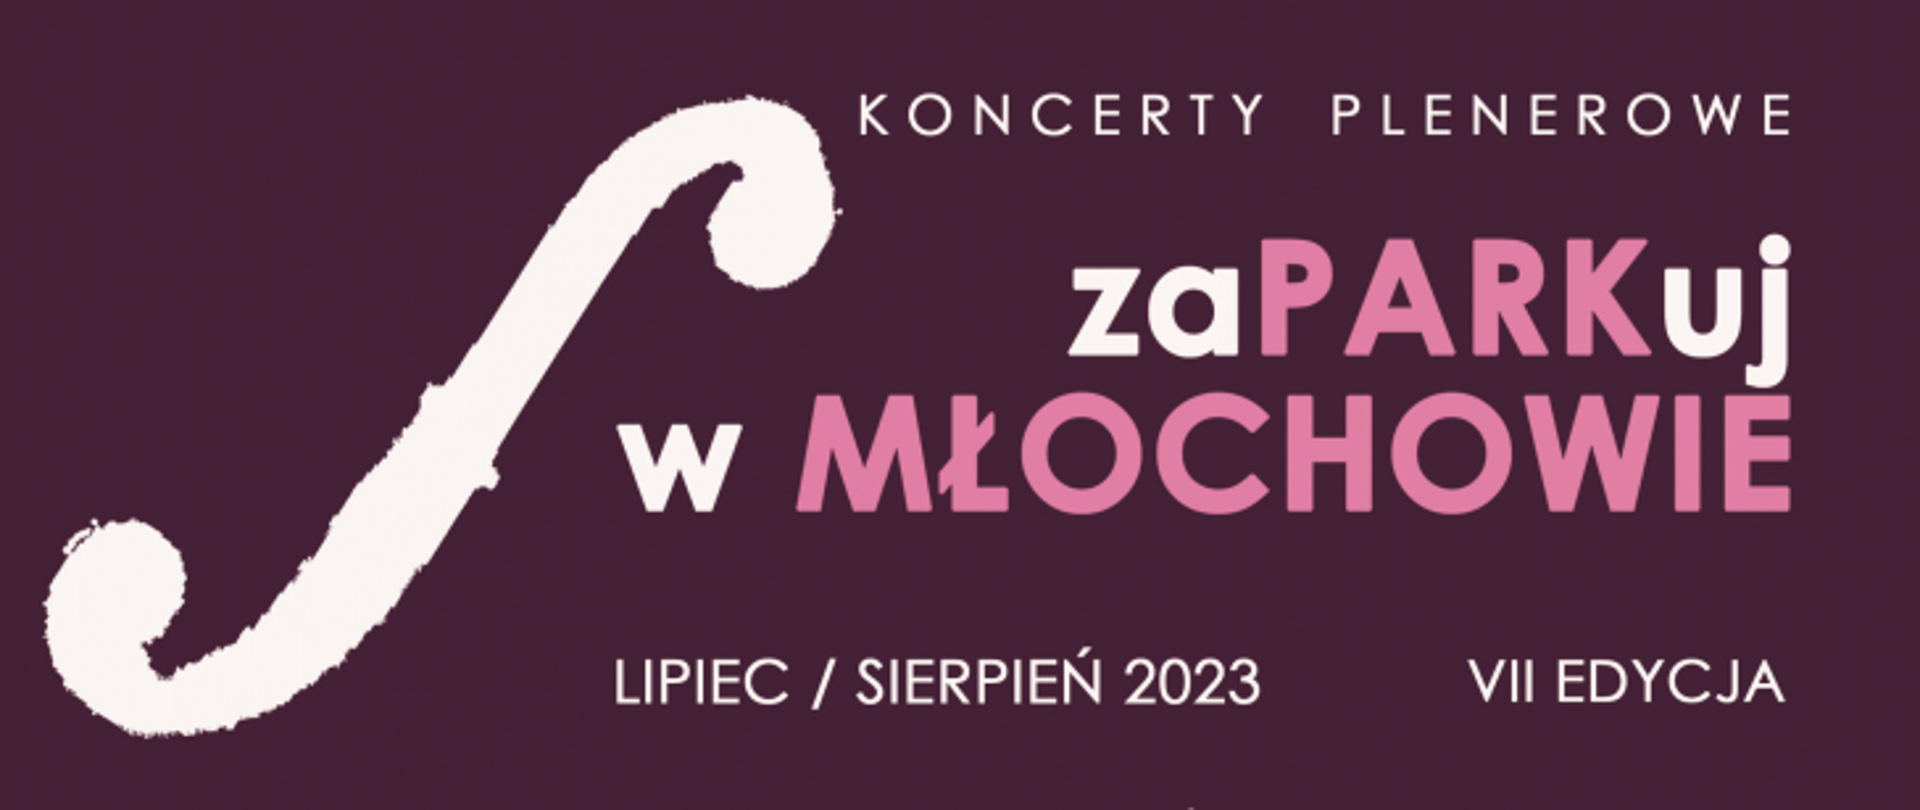 zaPARKuj w Młochowie - plakat o koncertach plenerowych